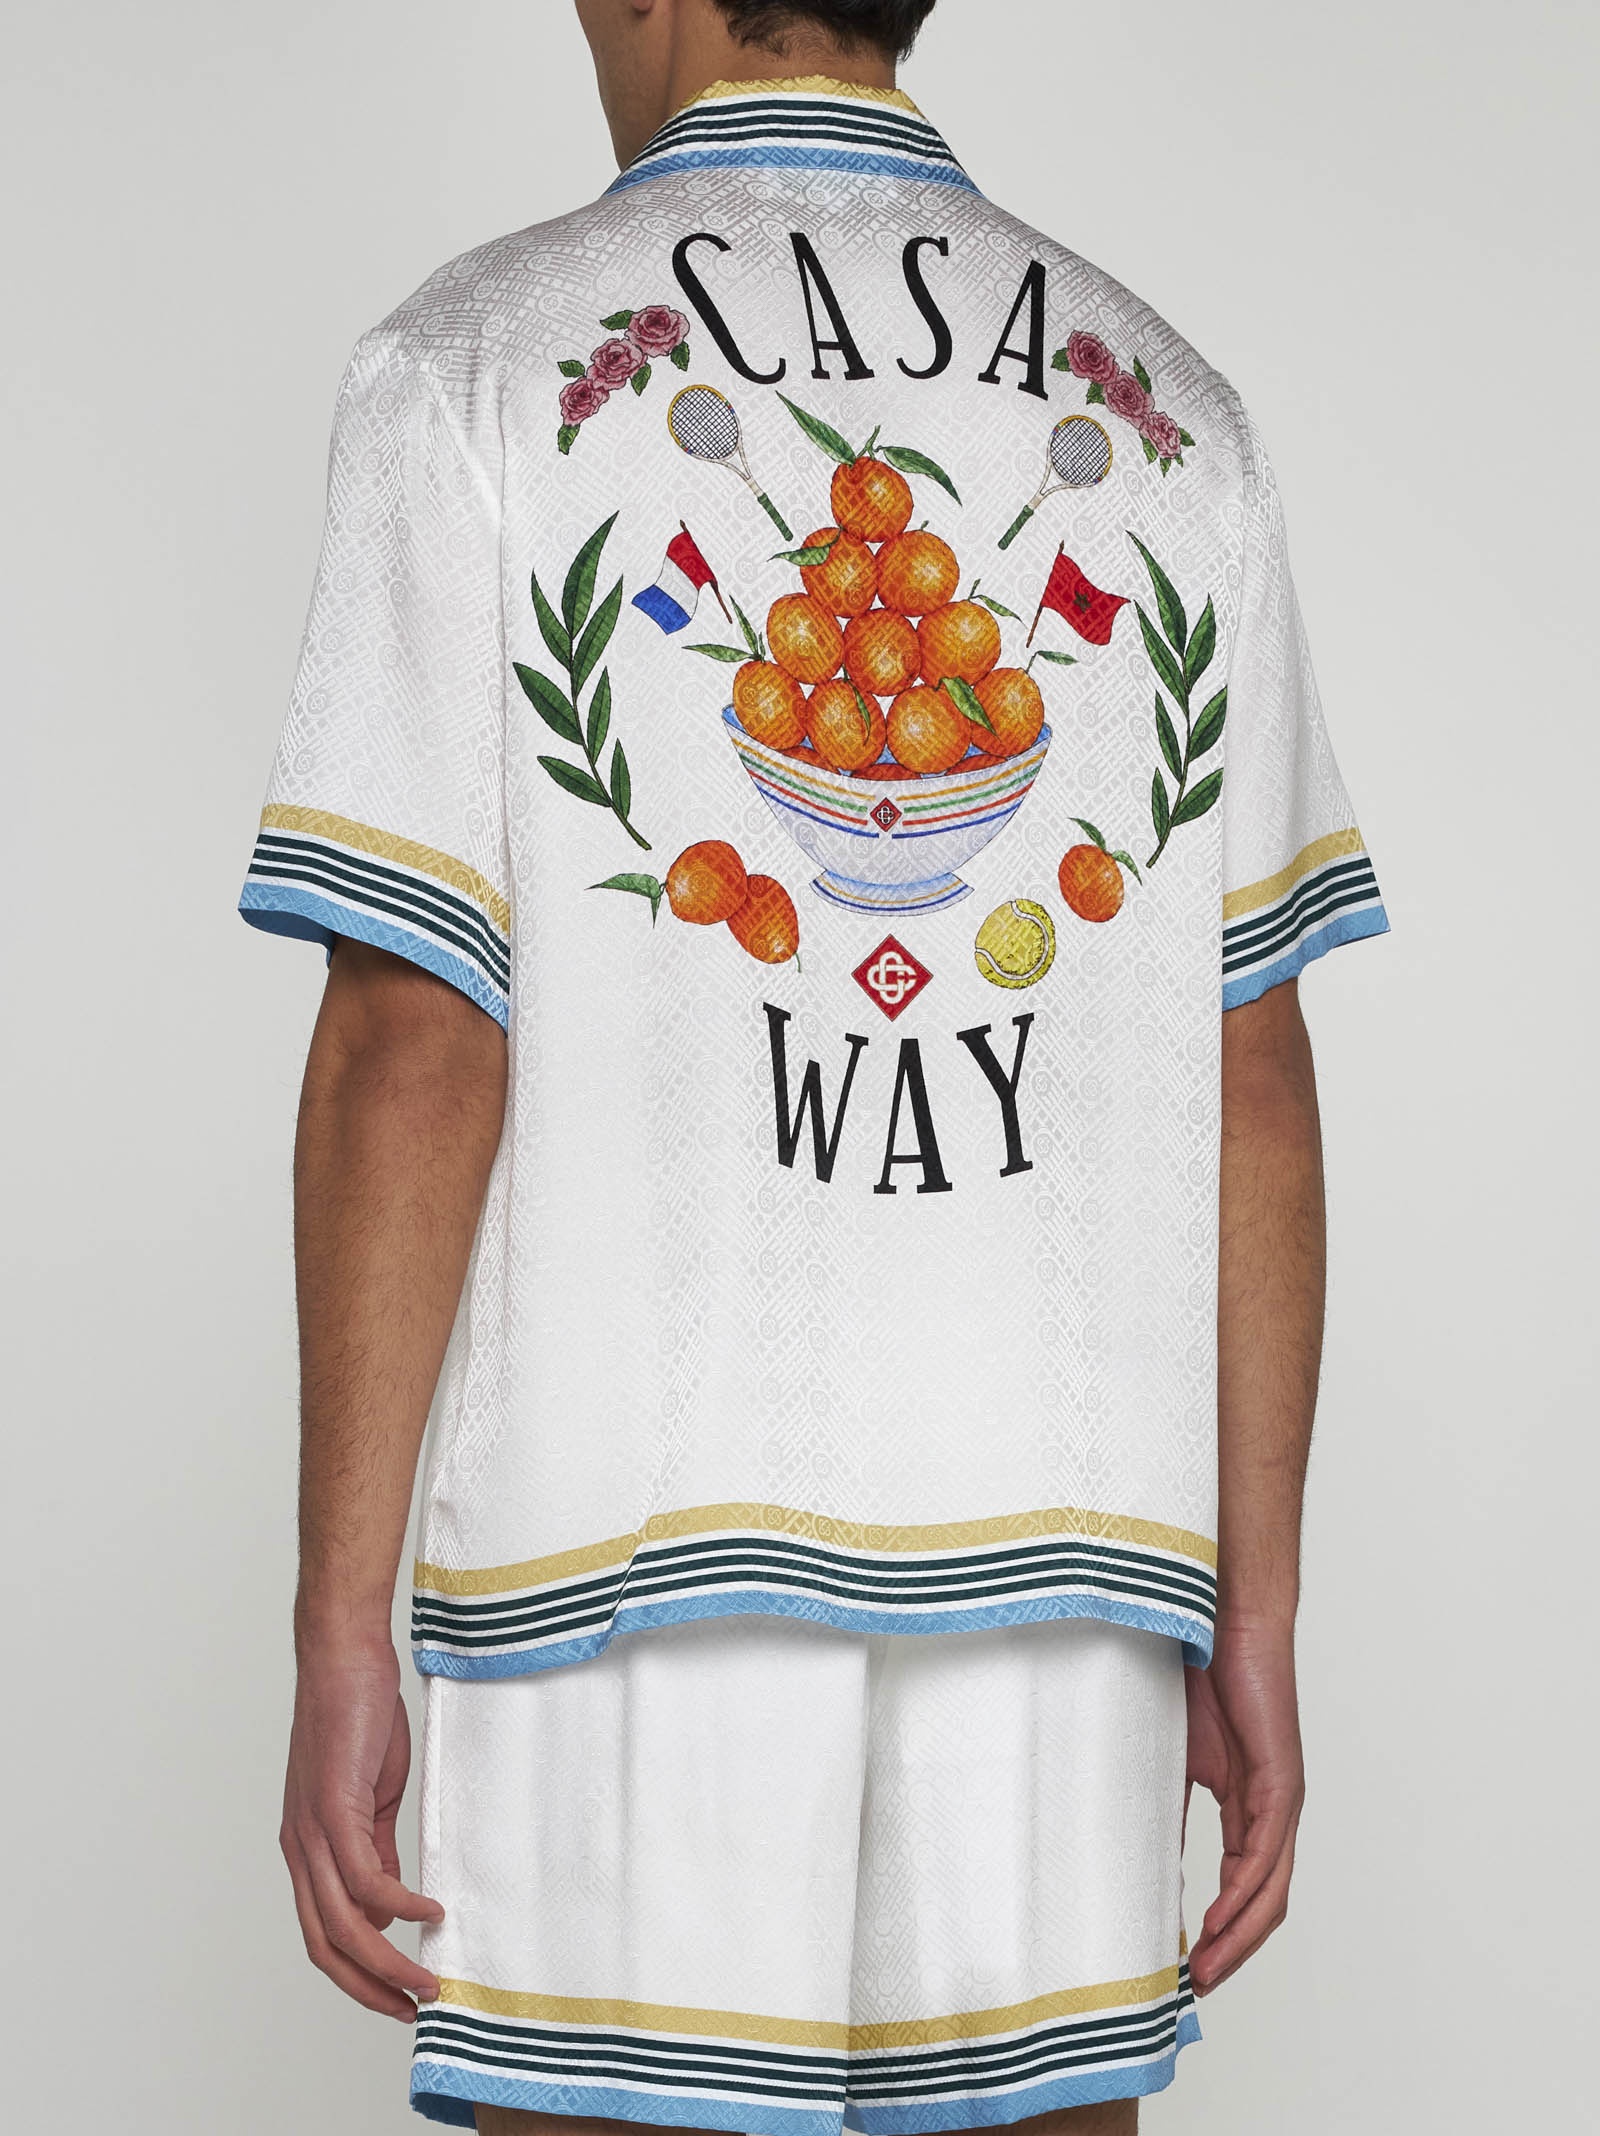 Casa Way jacquard silk shirt - 4